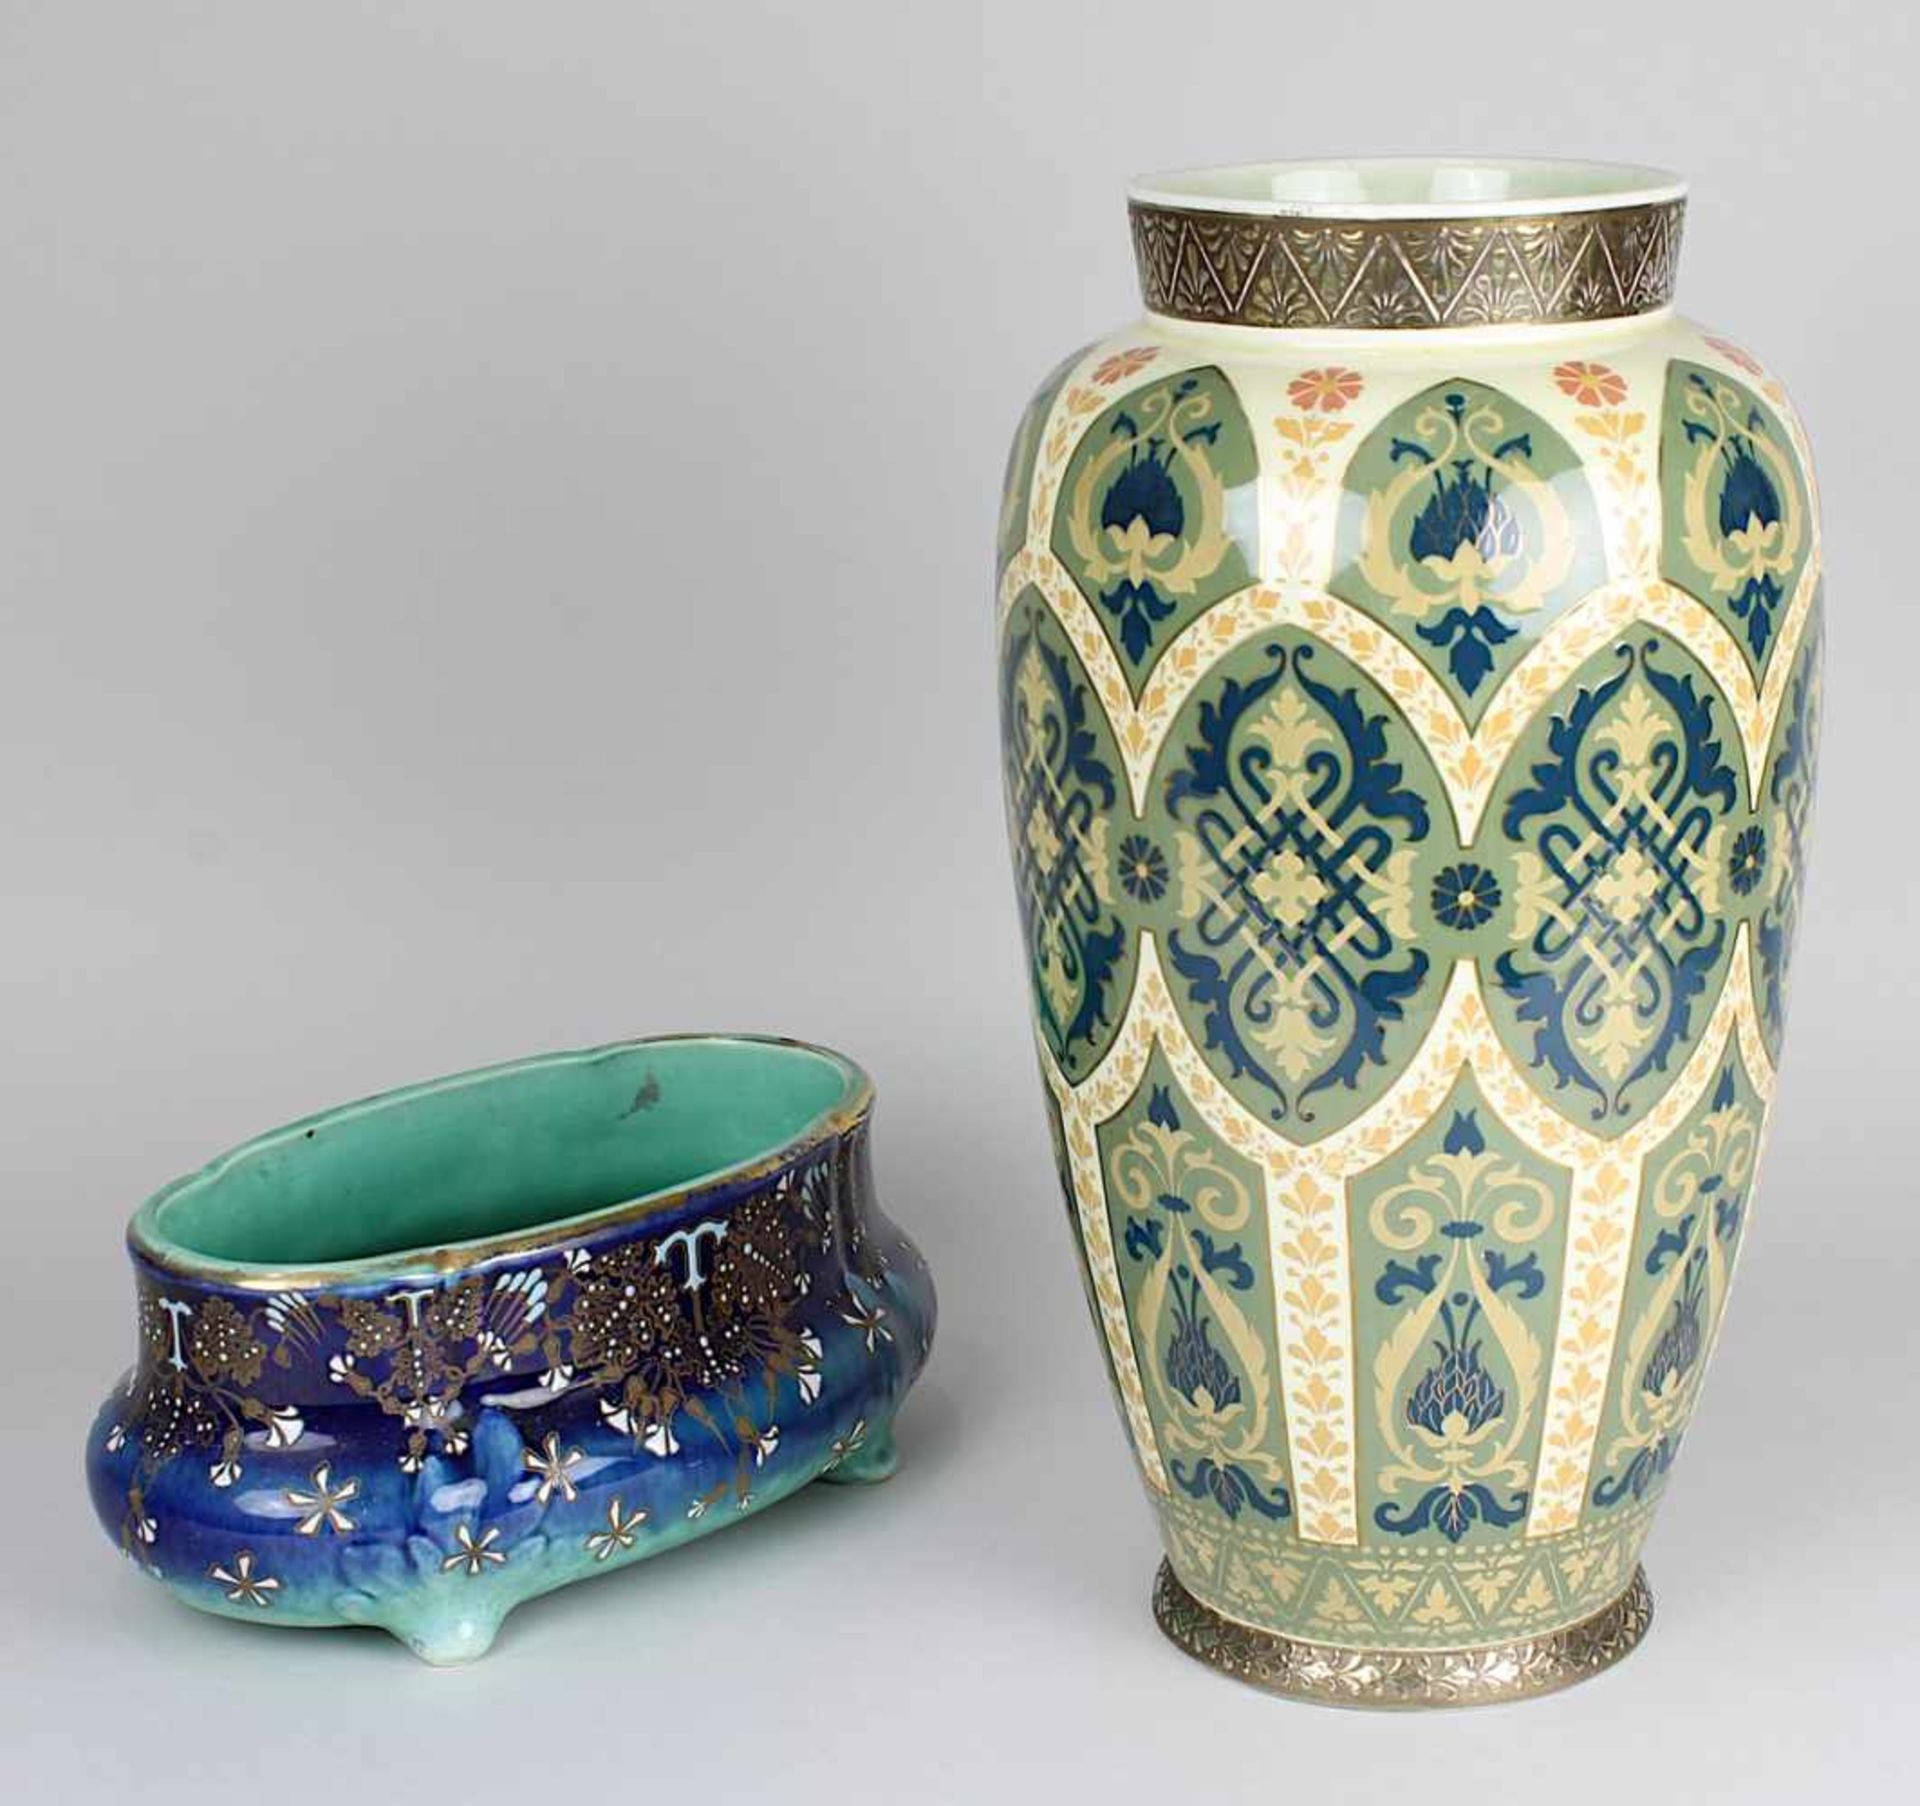 Villeroy & Boch Jugendstilvase und Keller & Gurin Cachepot, beide Teile um 1900, große Vase von